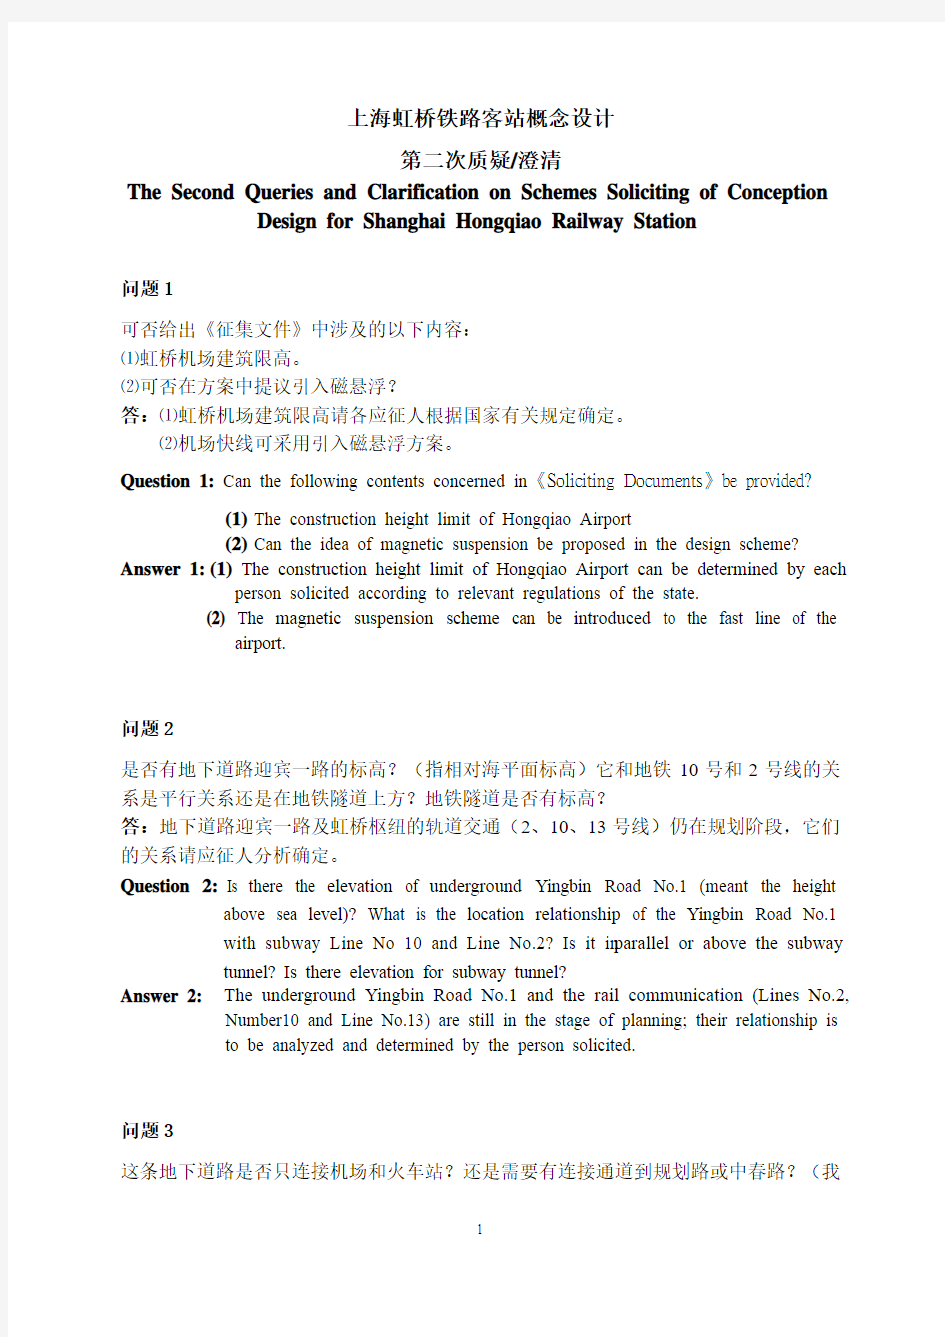 上海虹桥铁路客站概念设计方案征集